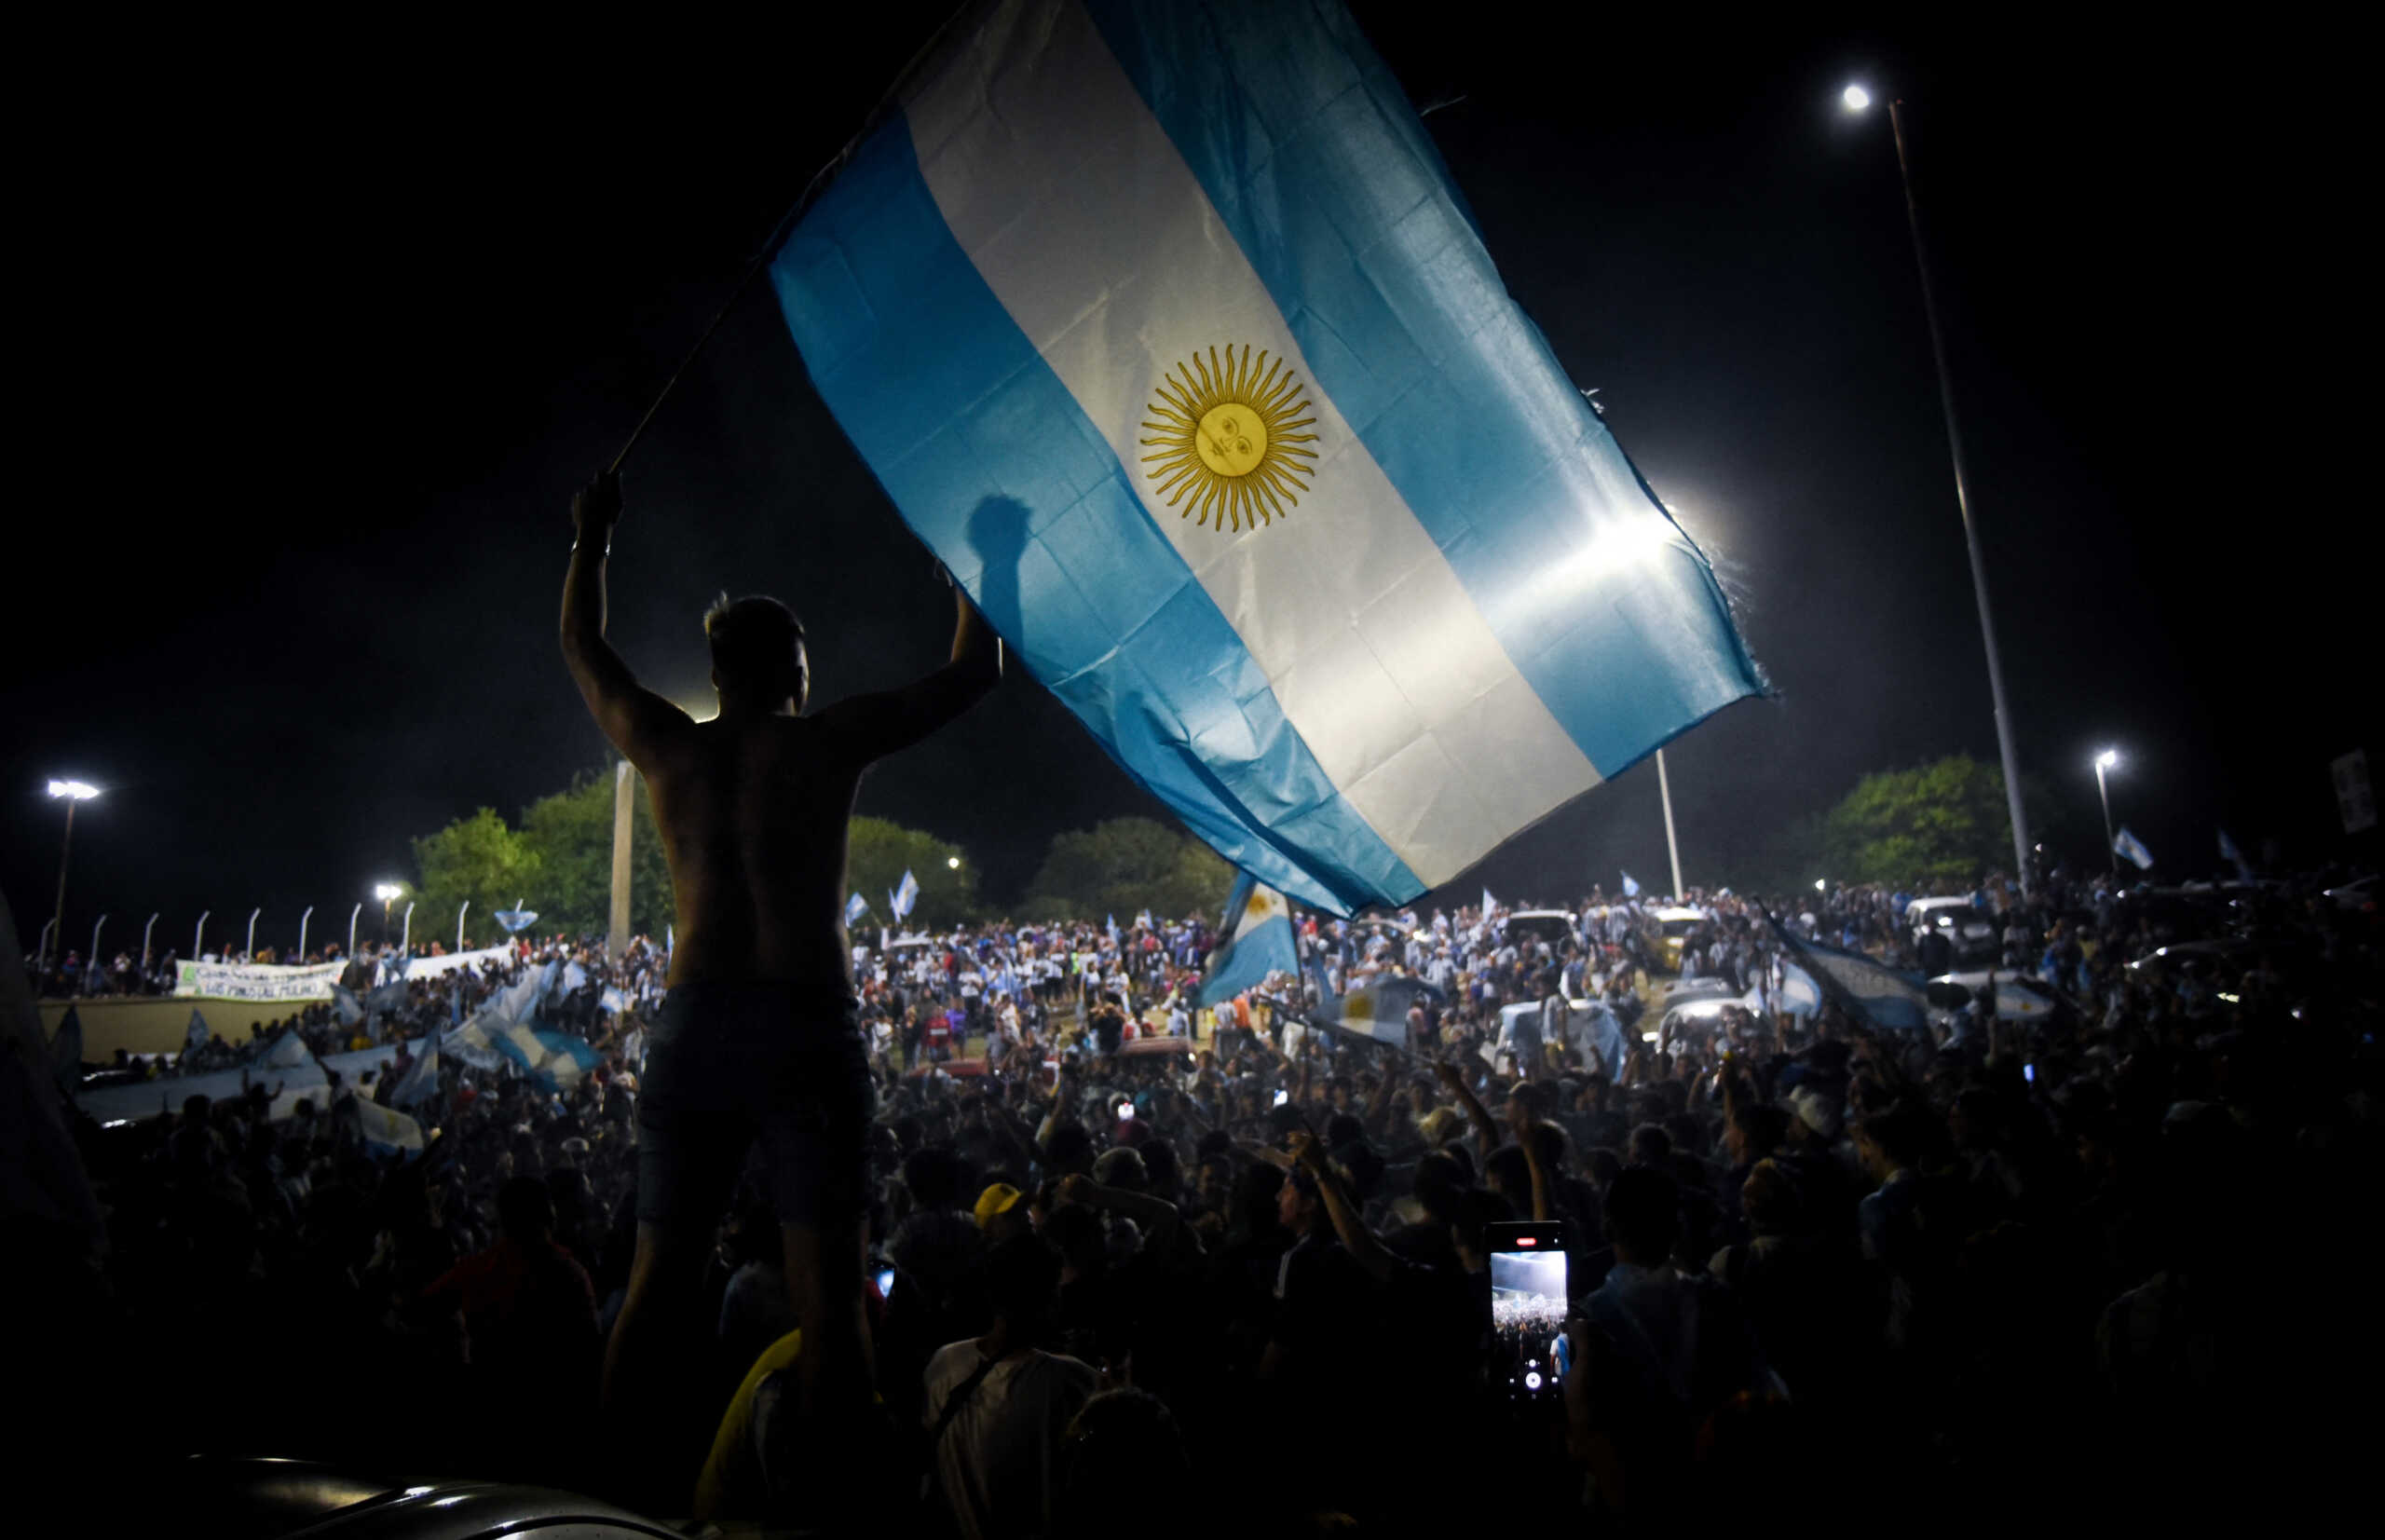 Οπαδός της Αργεντινής πέθανε από ασφυξία στους πανηγυρισμούς για το Μουντιάλ πνιγμένος από τη σημαία του